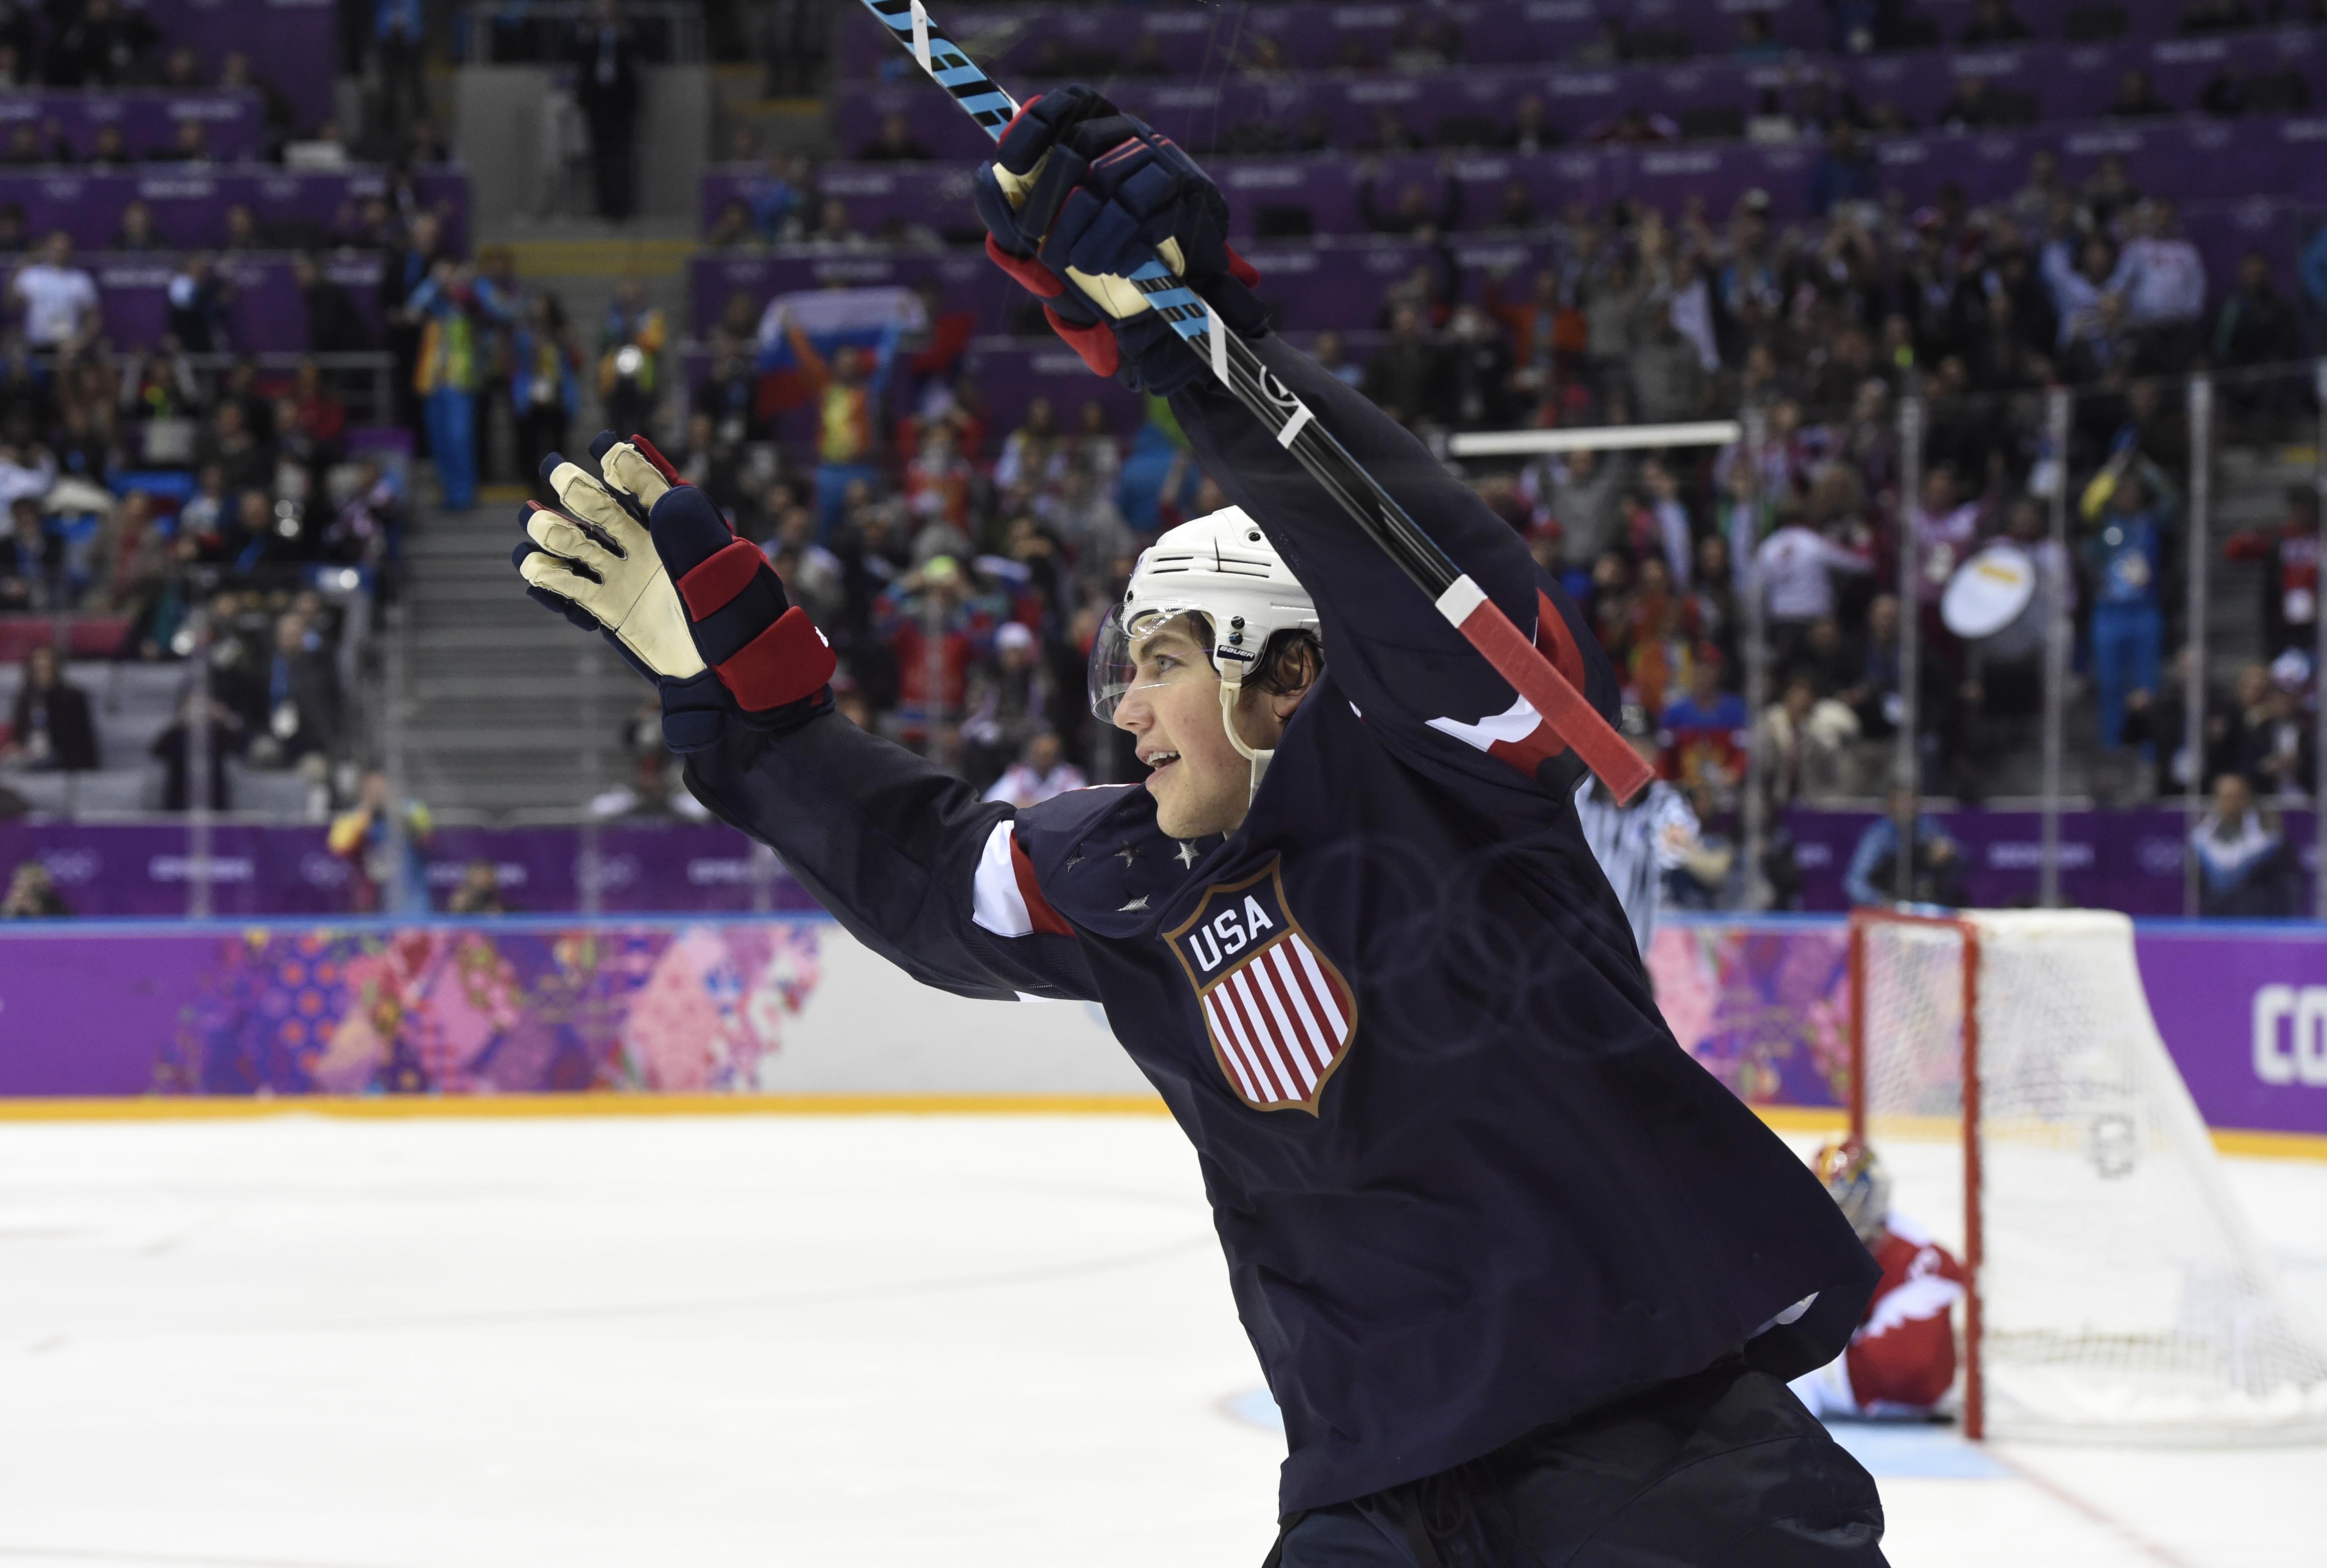 Beijing Olympics: Here is the full Team USA men's hockey roster